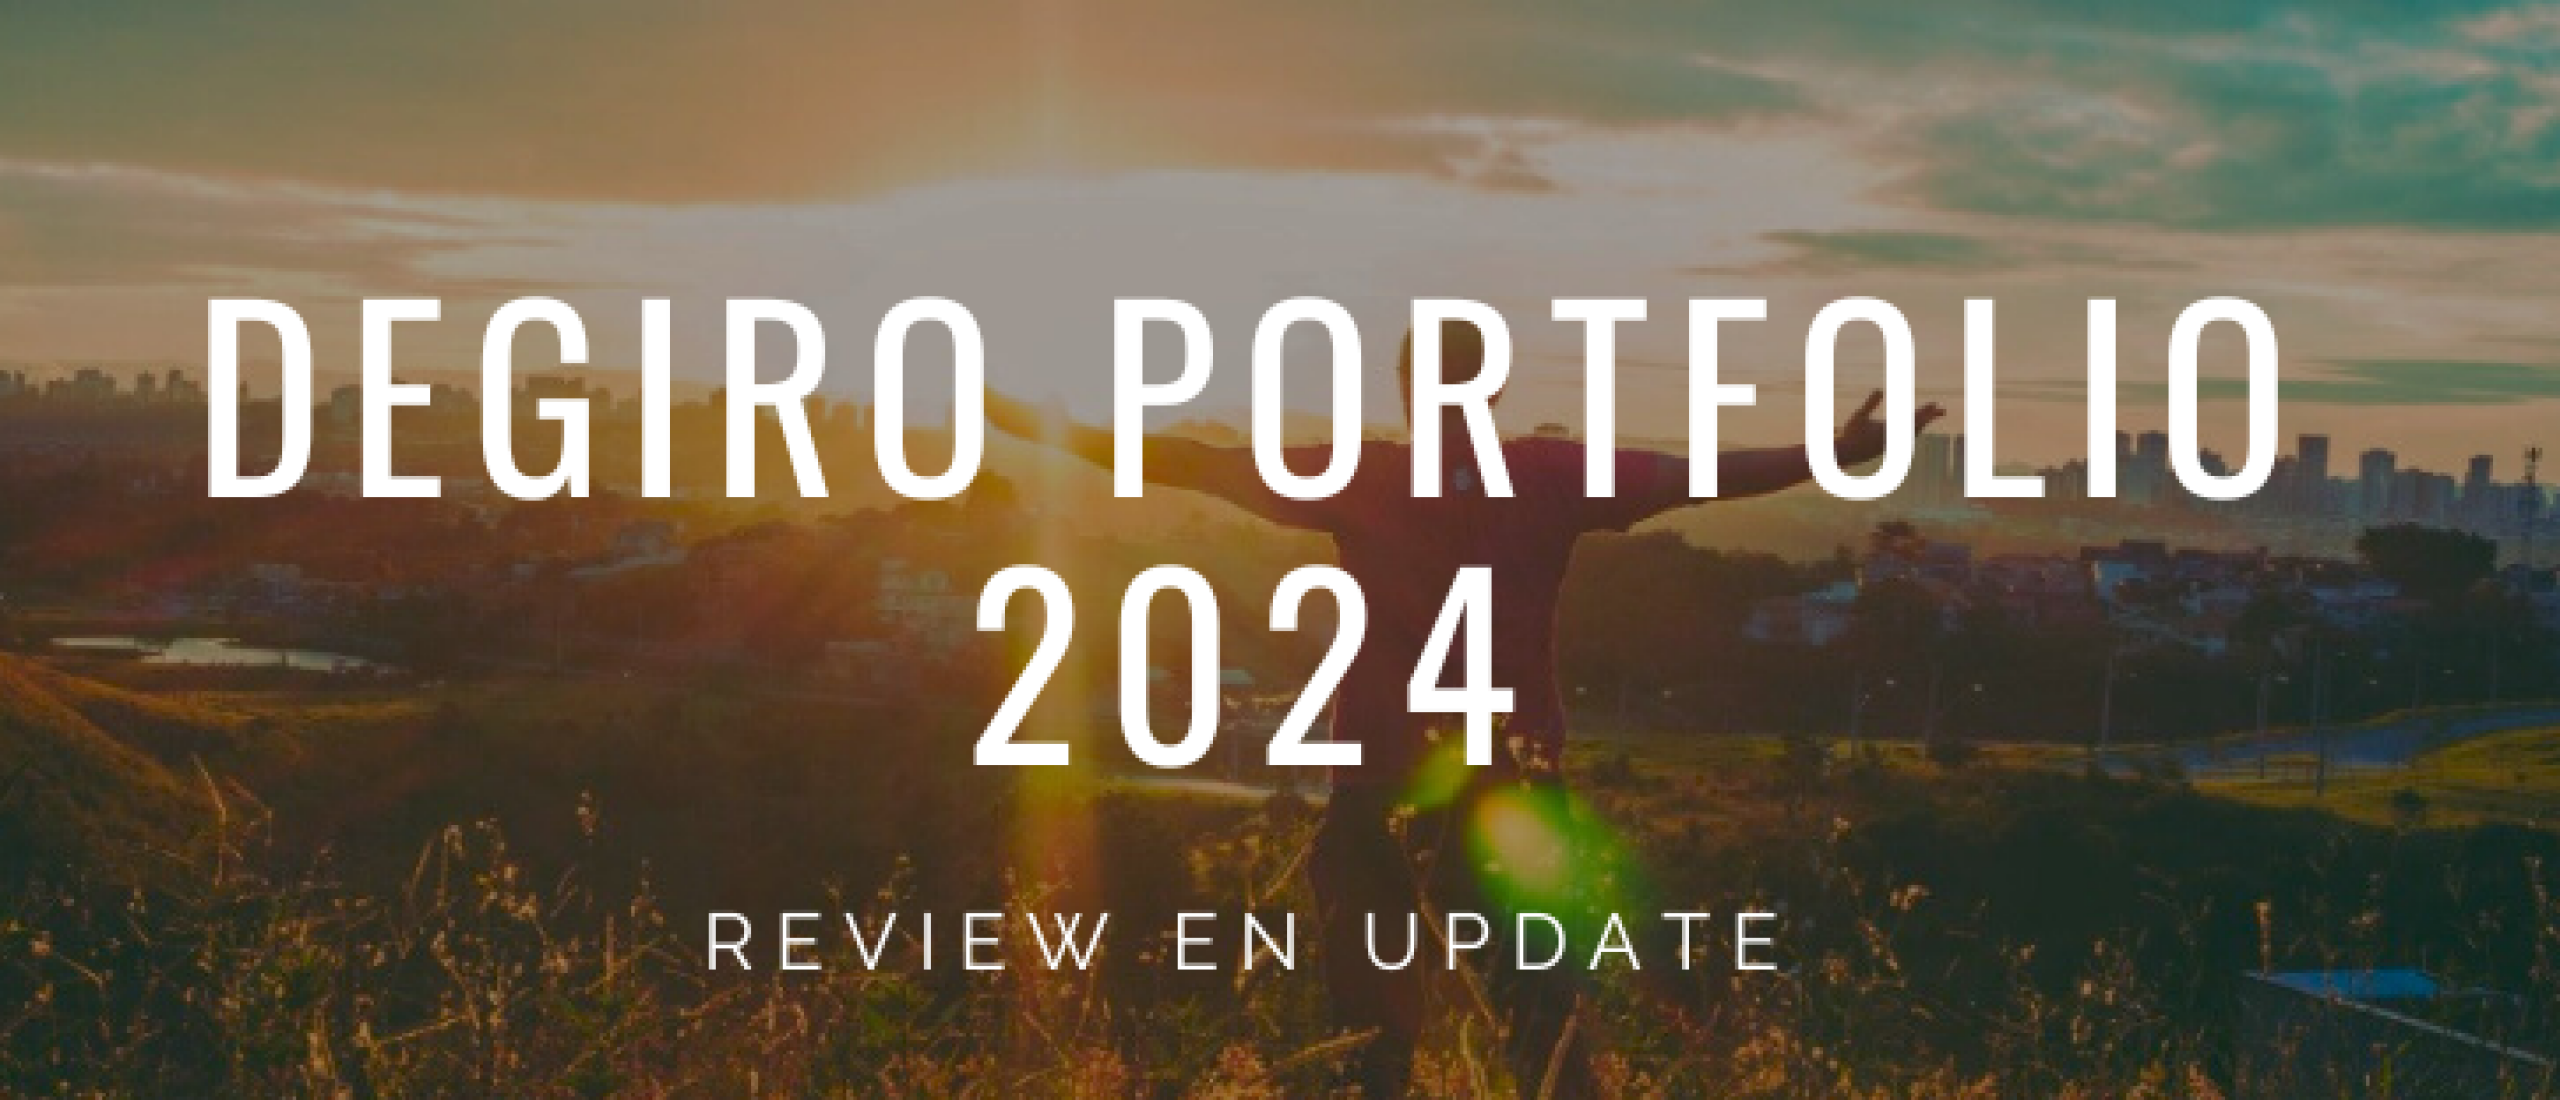 degiro-portfolio-2024